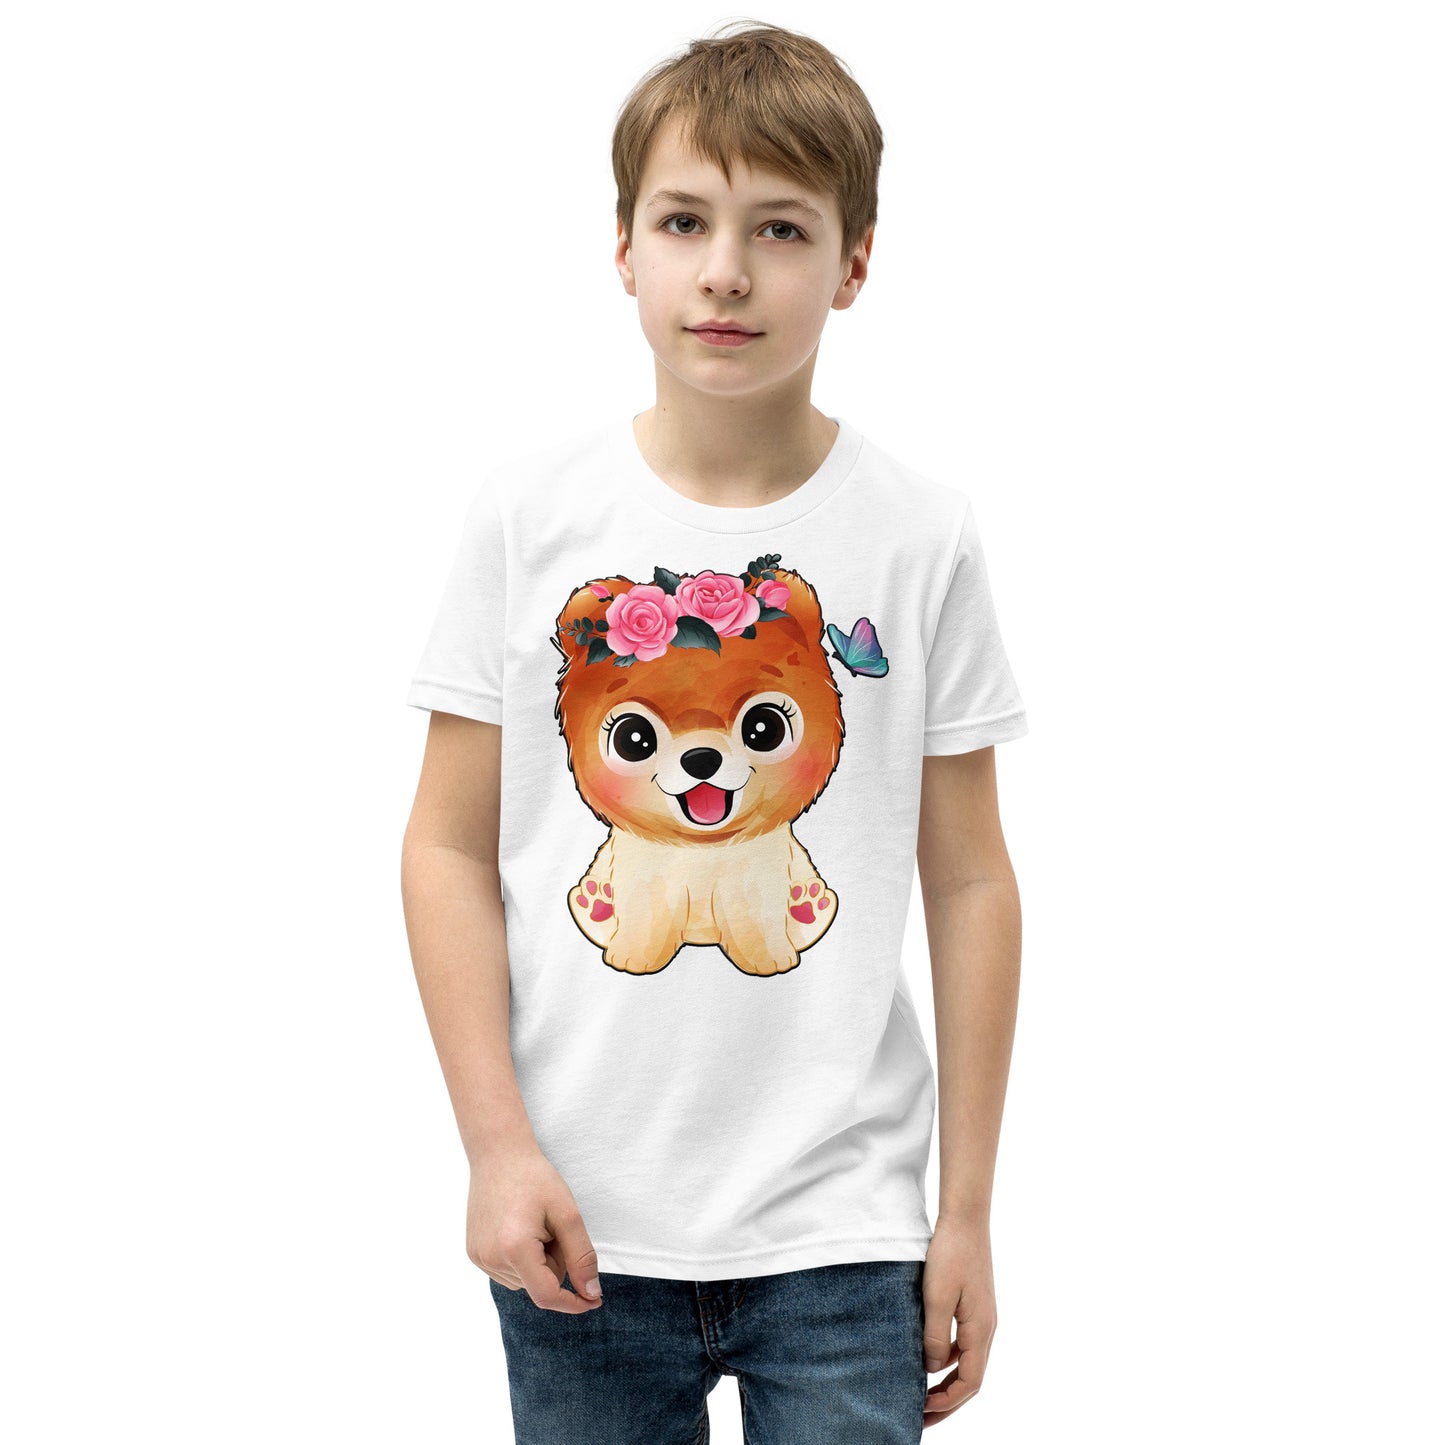 Cute Little Dog T-shirt, No. 0356